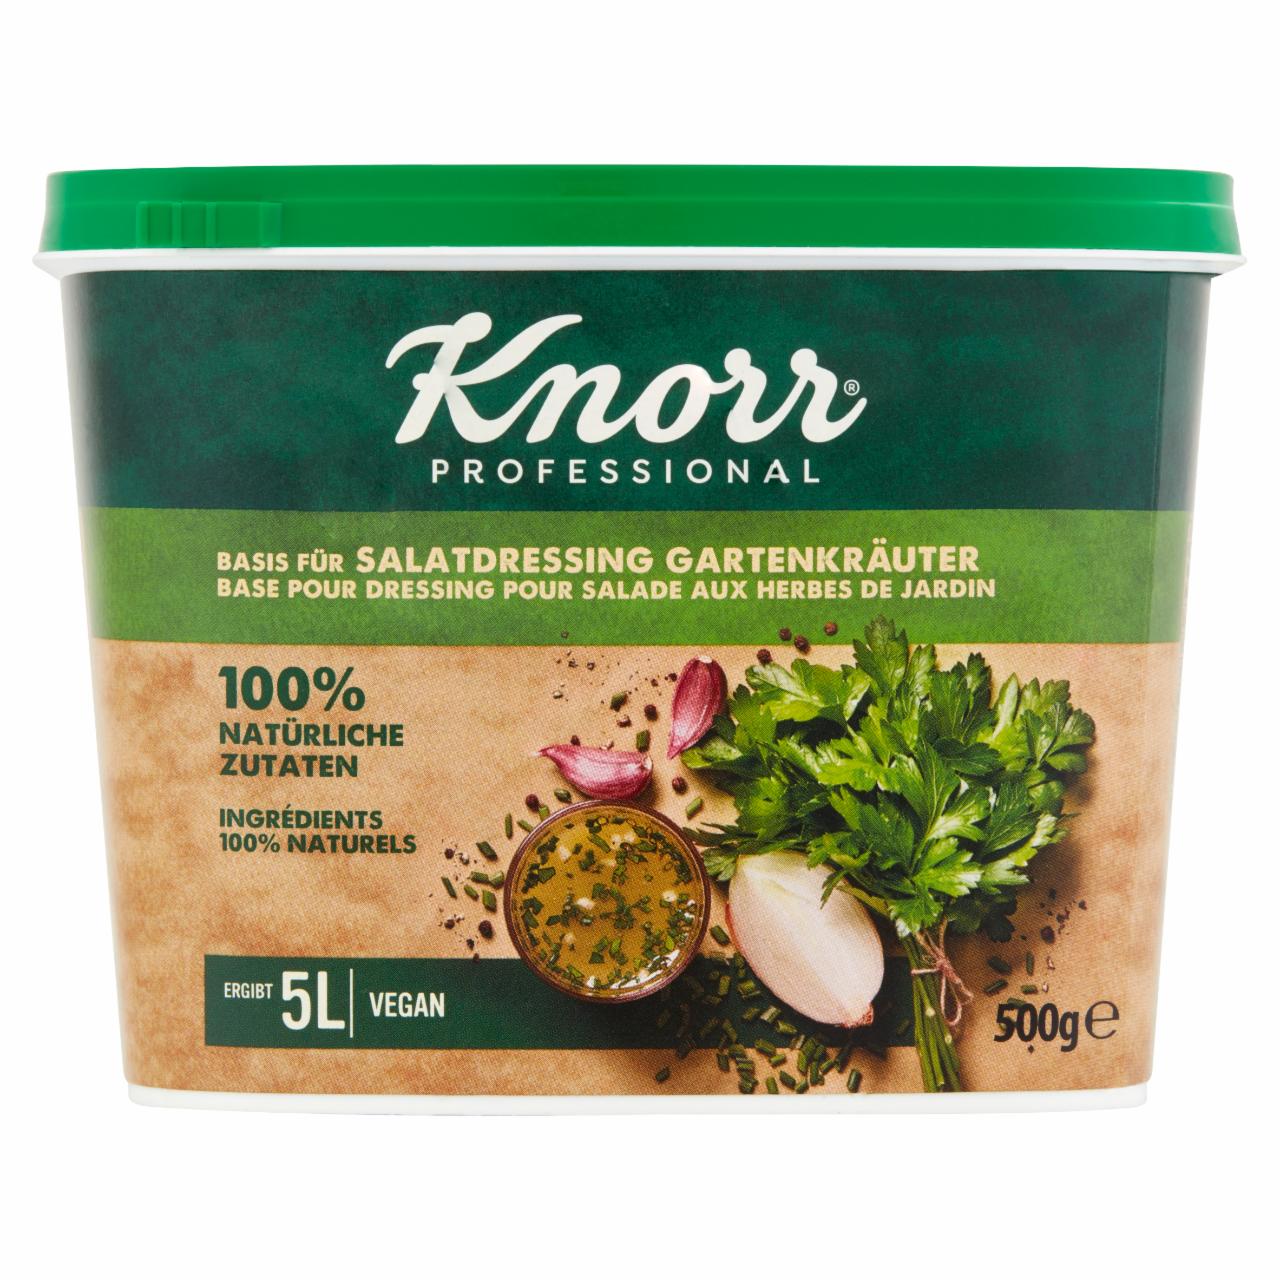 Zdjęcia - Knorr Professional Sos sałatkowy klasyczny 500 g